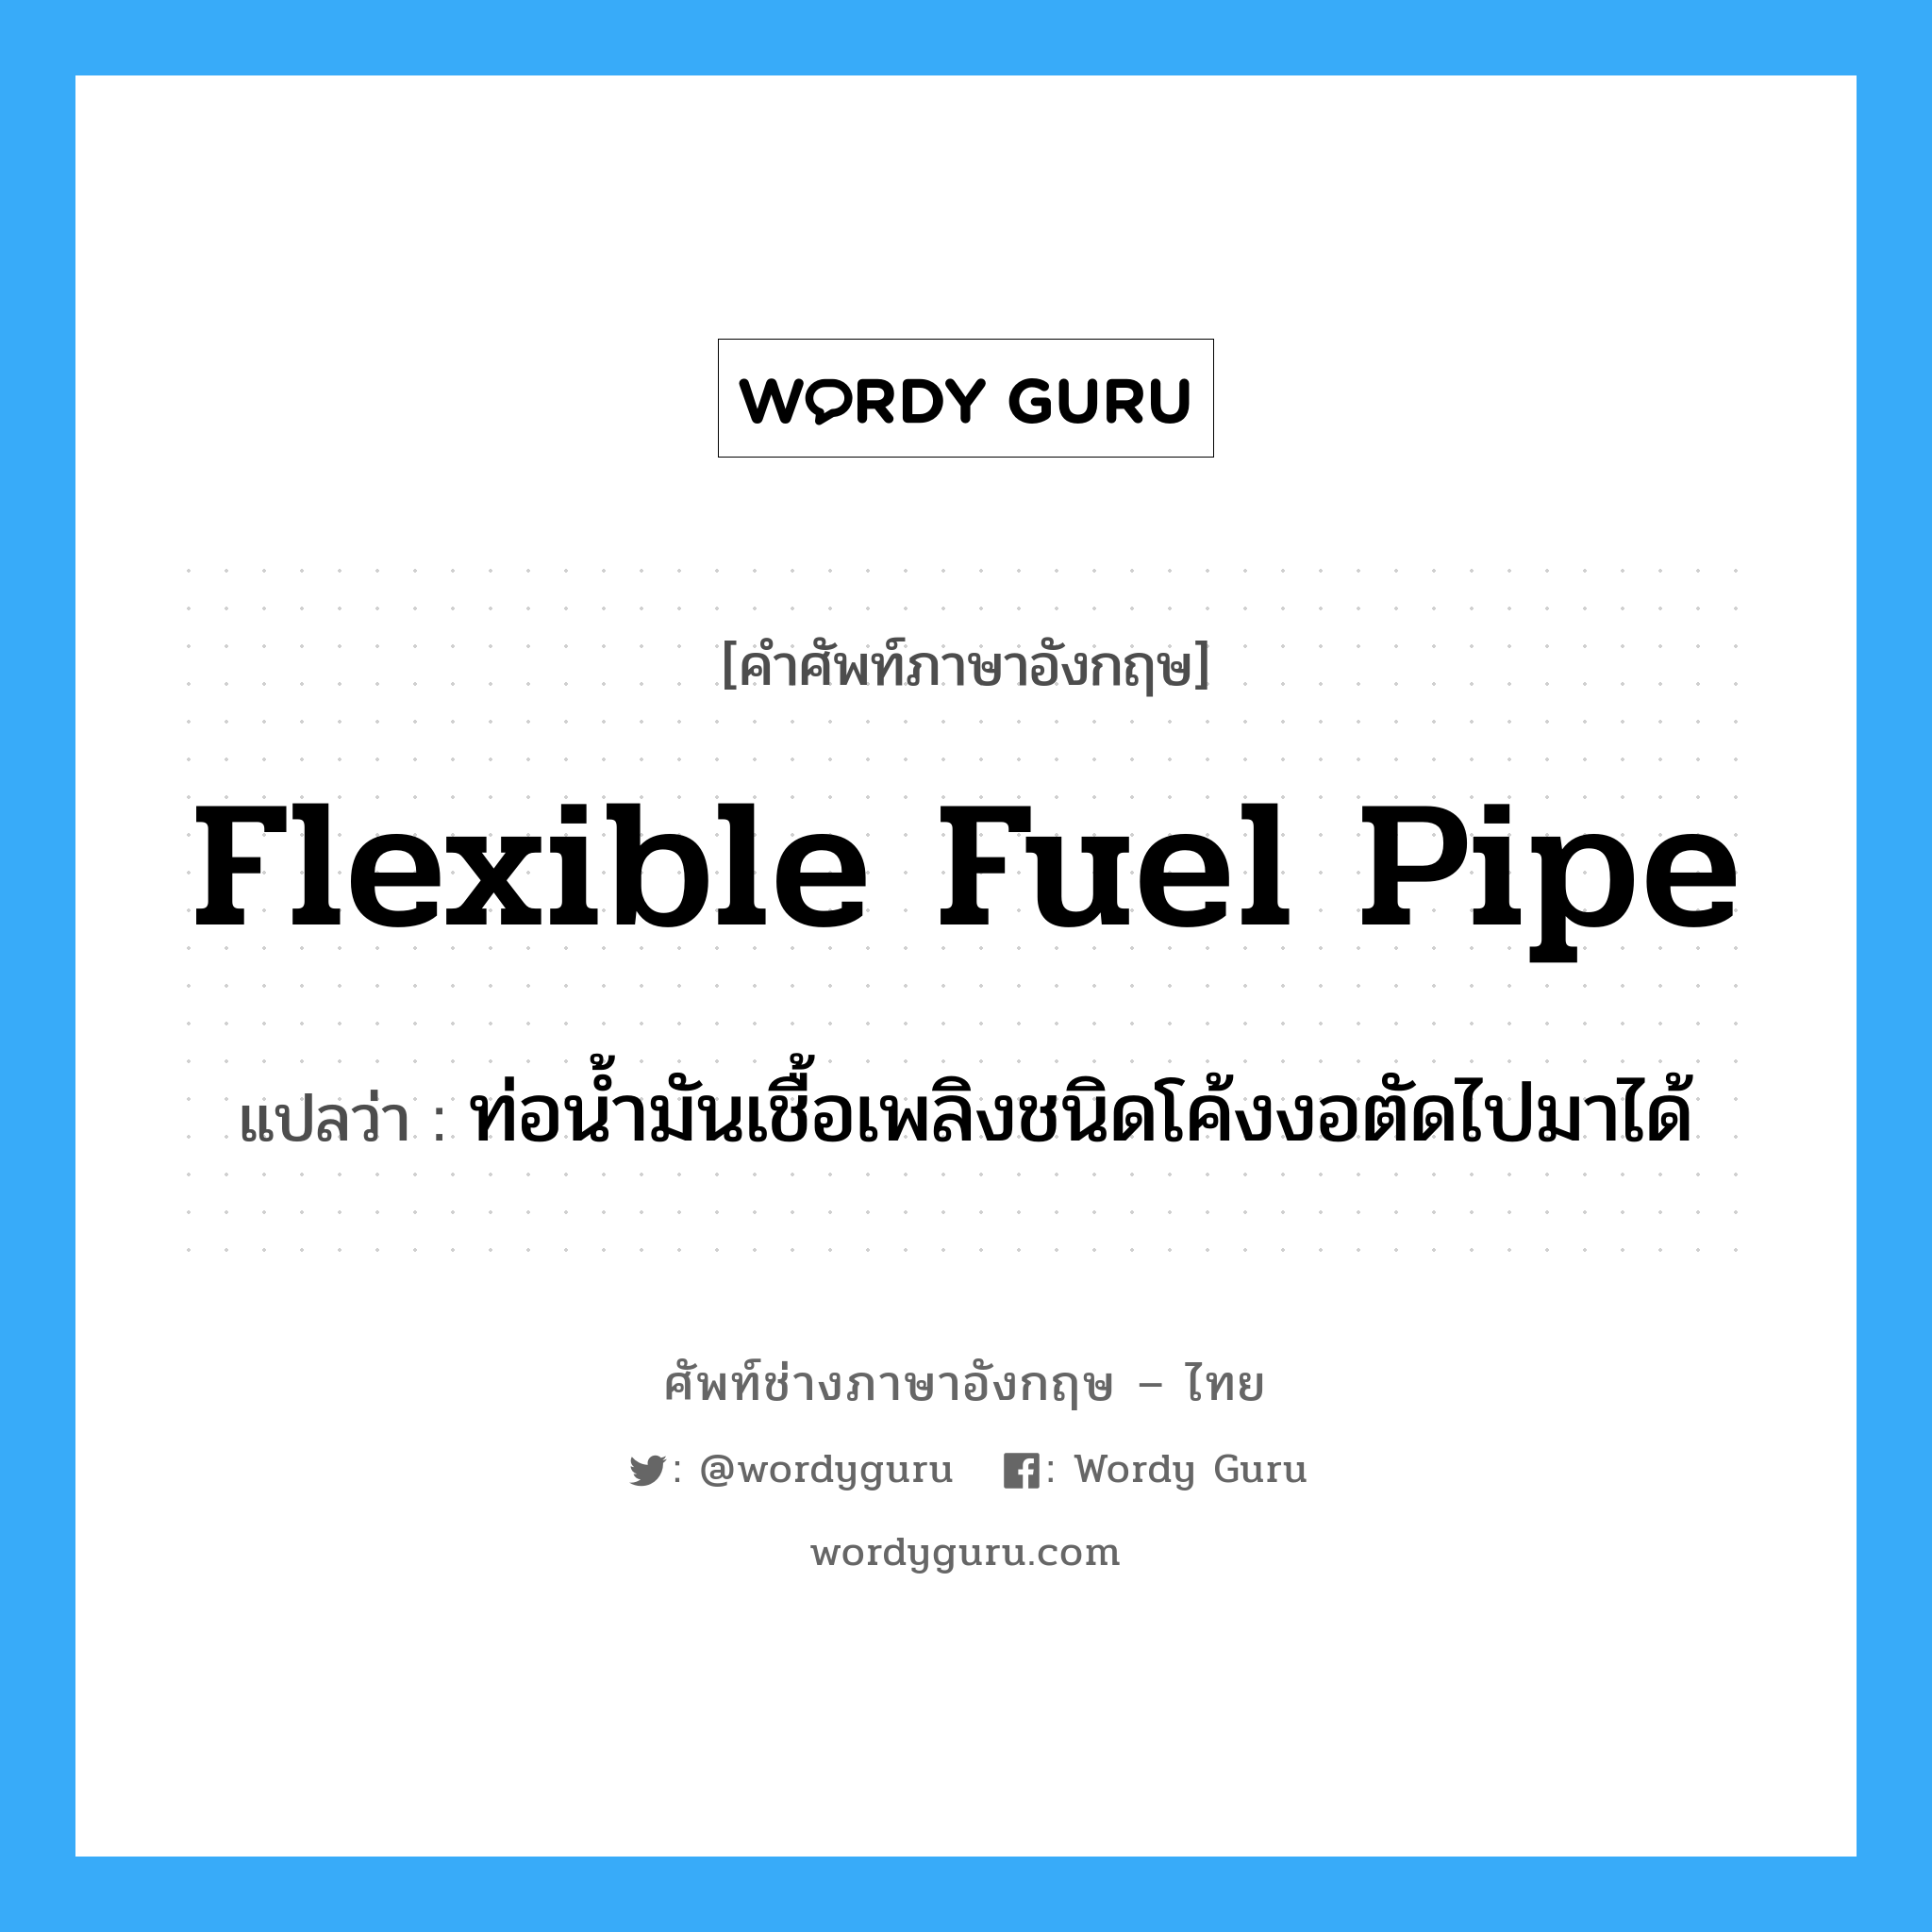 flexible fuel pipe แปลว่า?, คำศัพท์ช่างภาษาอังกฤษ - ไทย flexible fuel pipe คำศัพท์ภาษาอังกฤษ flexible fuel pipe แปลว่า ท่อน้ำมันเชื้อเพลิงชนิดโค้งงอตัดไปมาได้